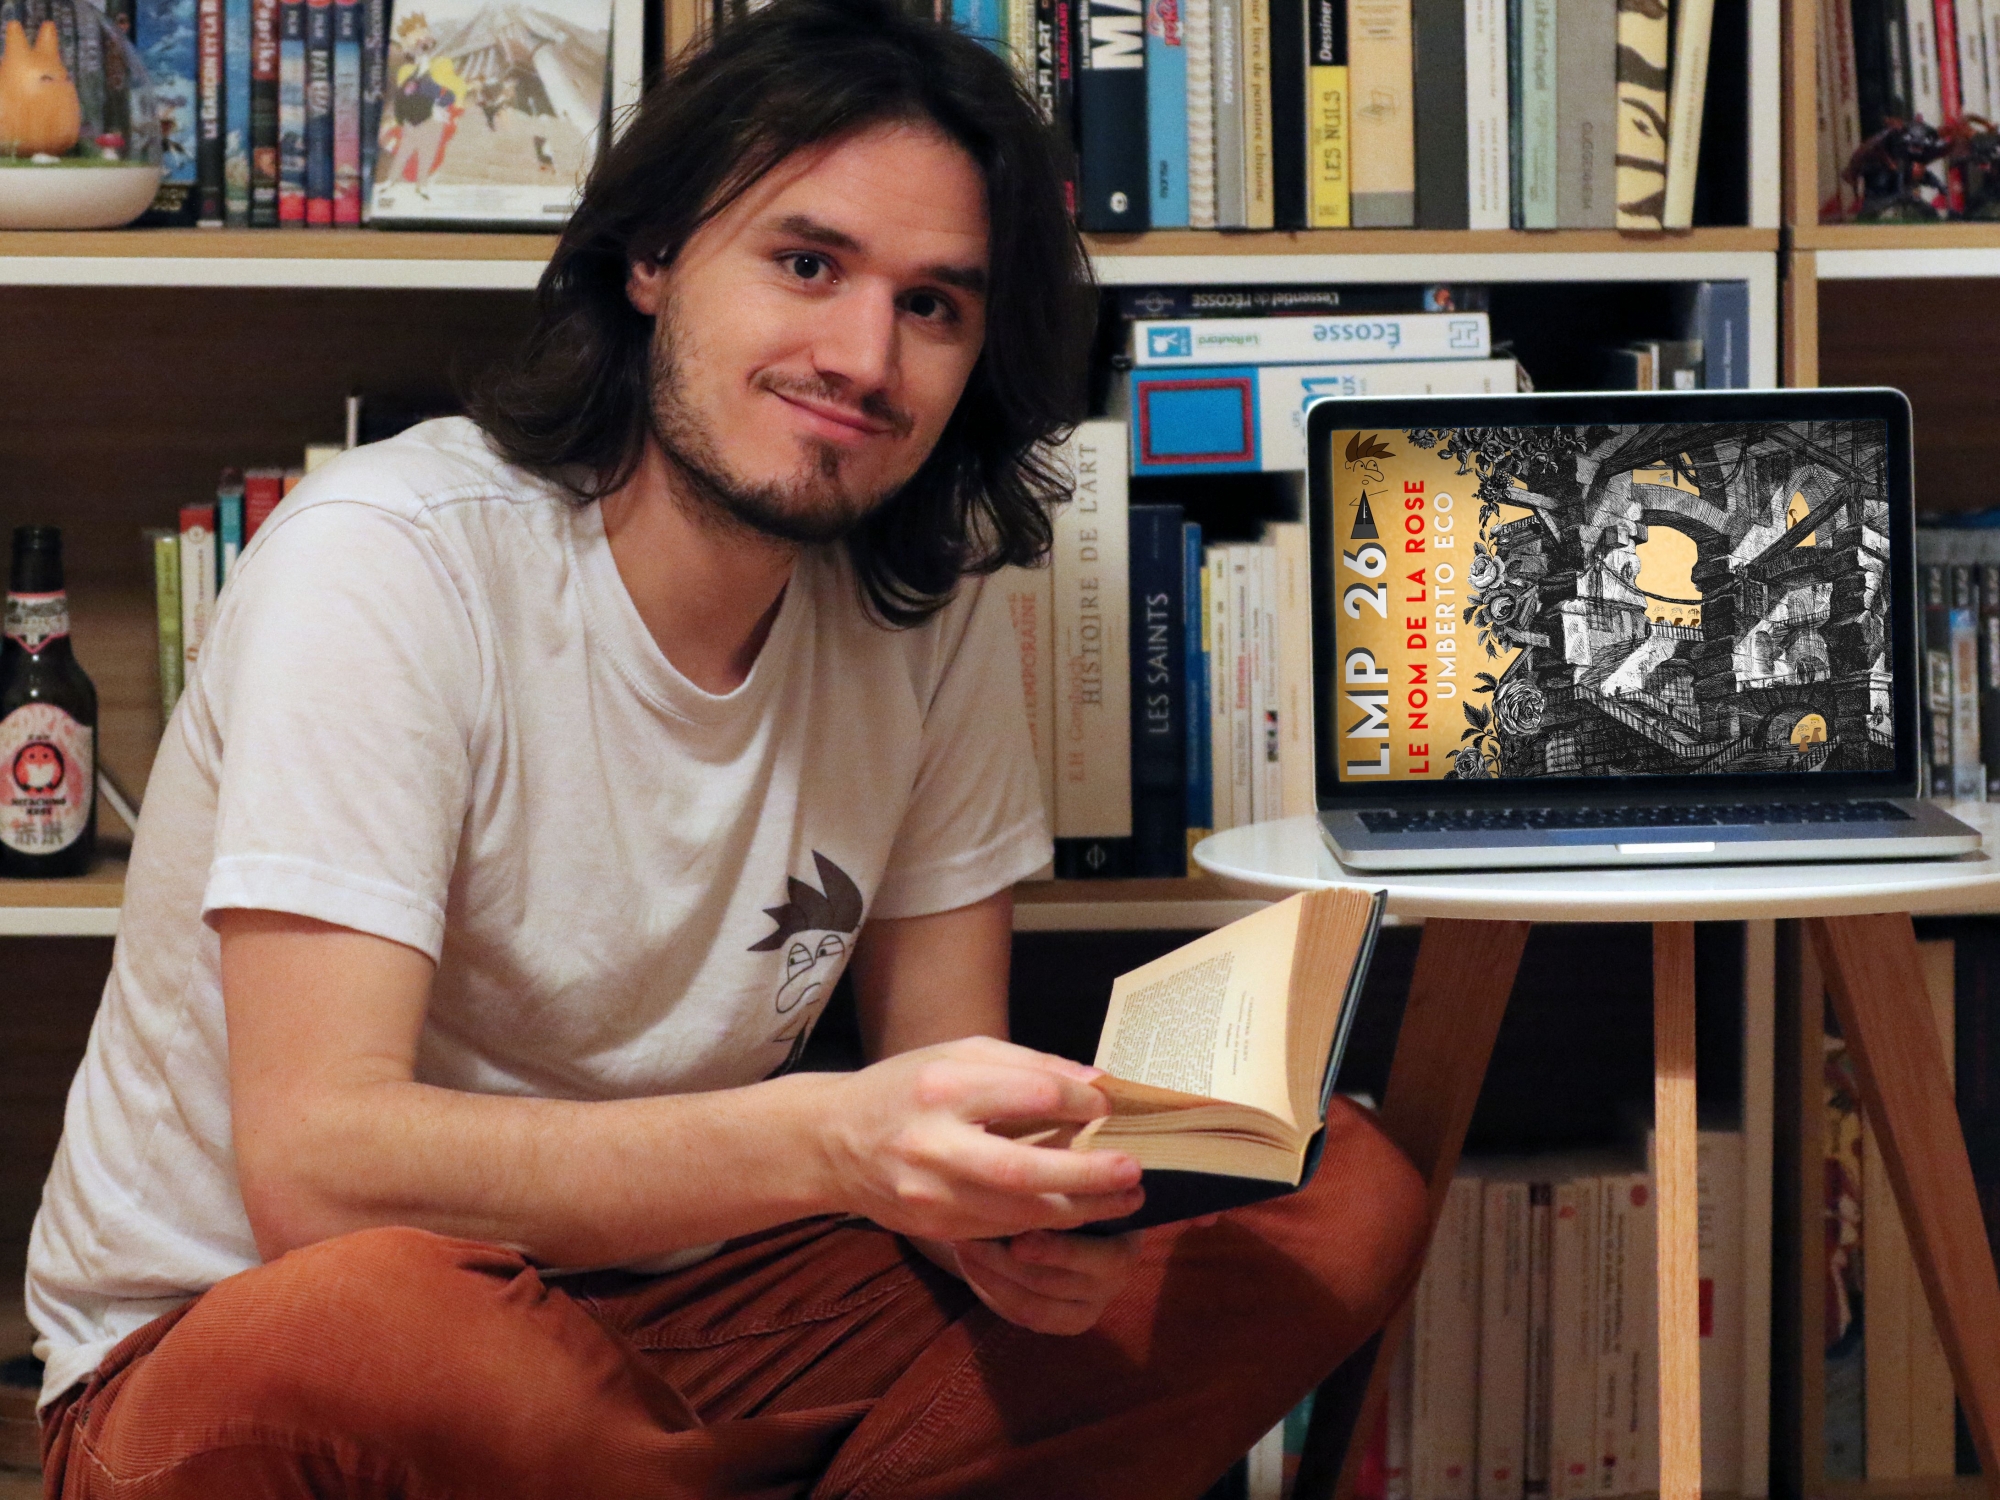 Jordi Gabioud, à travers YouTube, partage sa passion de littérature de manière ludique.